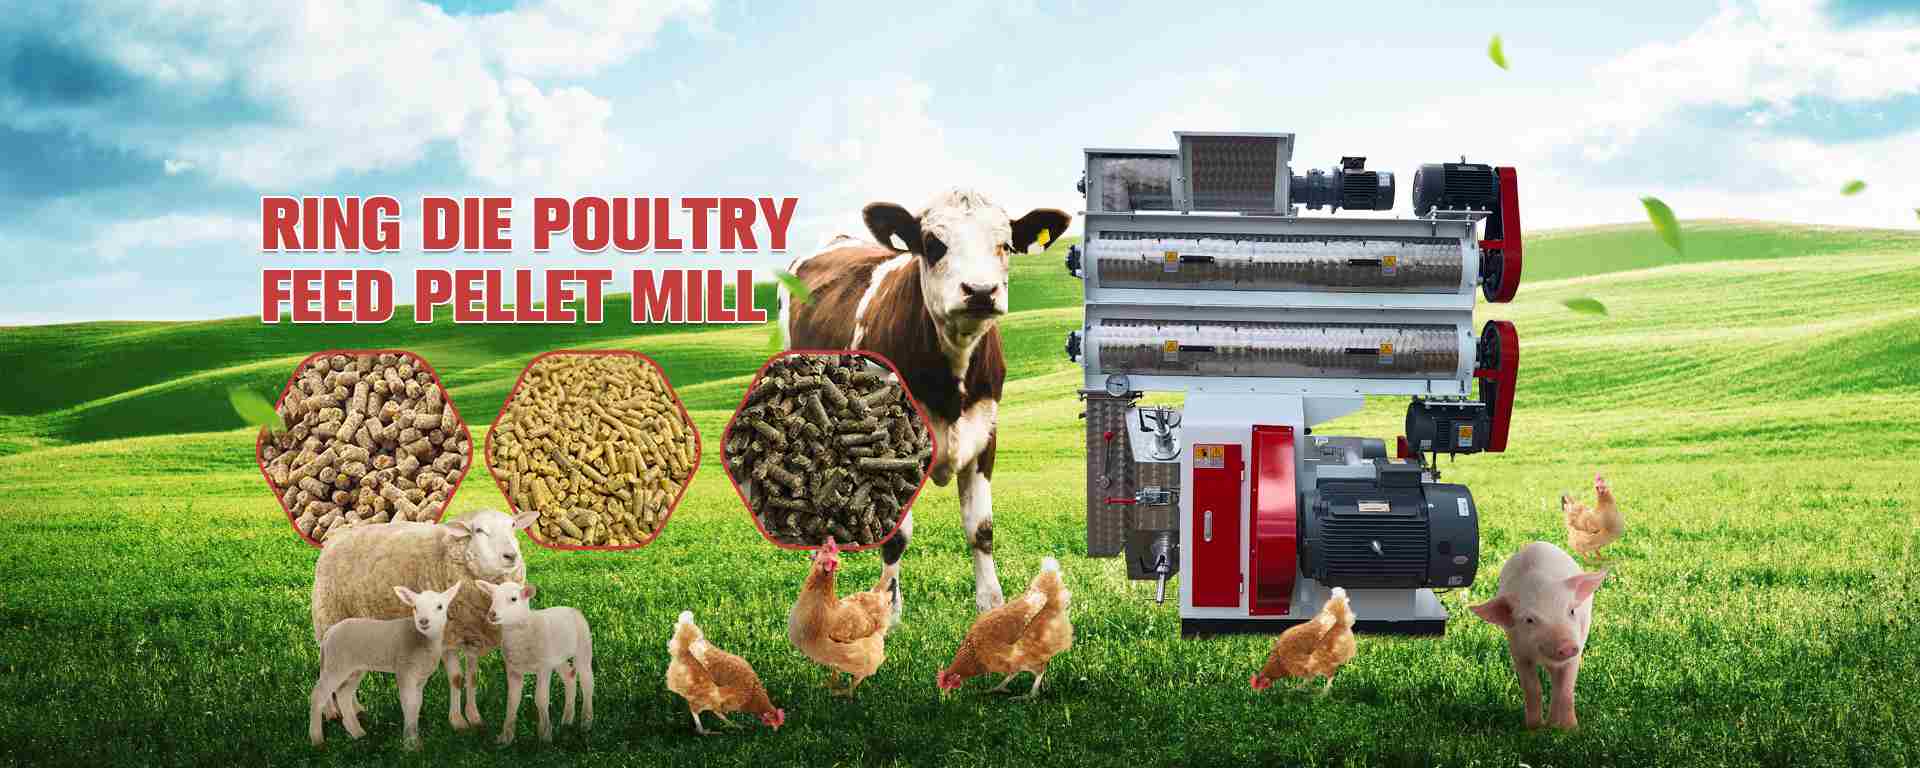 Ring die poultry feed pellet mill